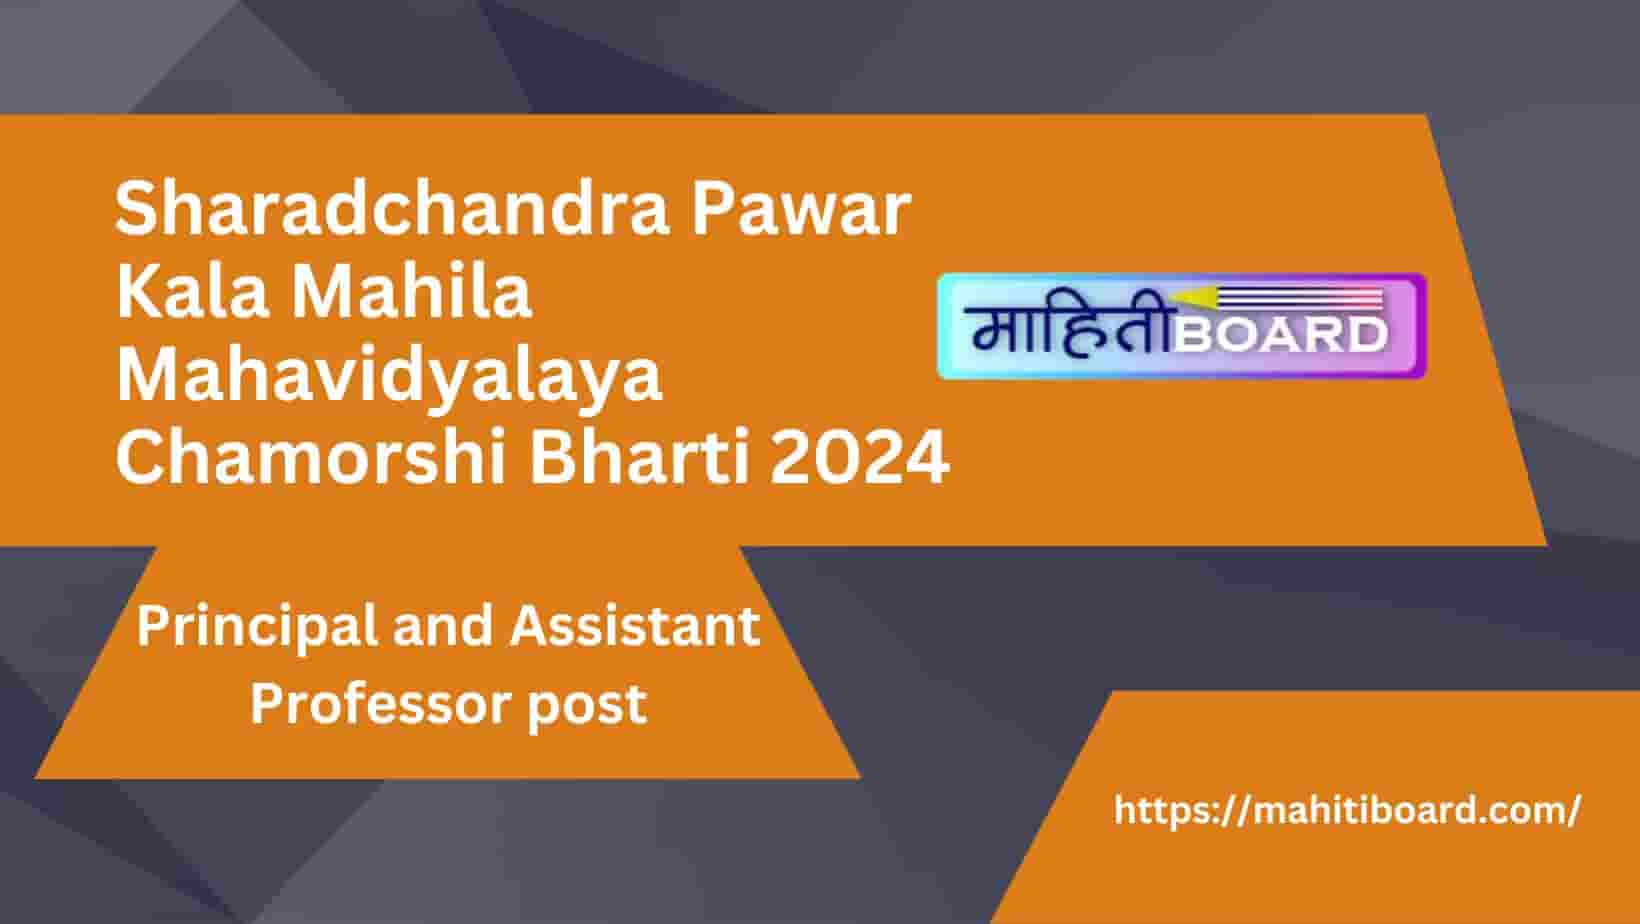 Sharadchandra Pawar Kala Mahila Mahavidyalaya Chamorshi Bharti 2024